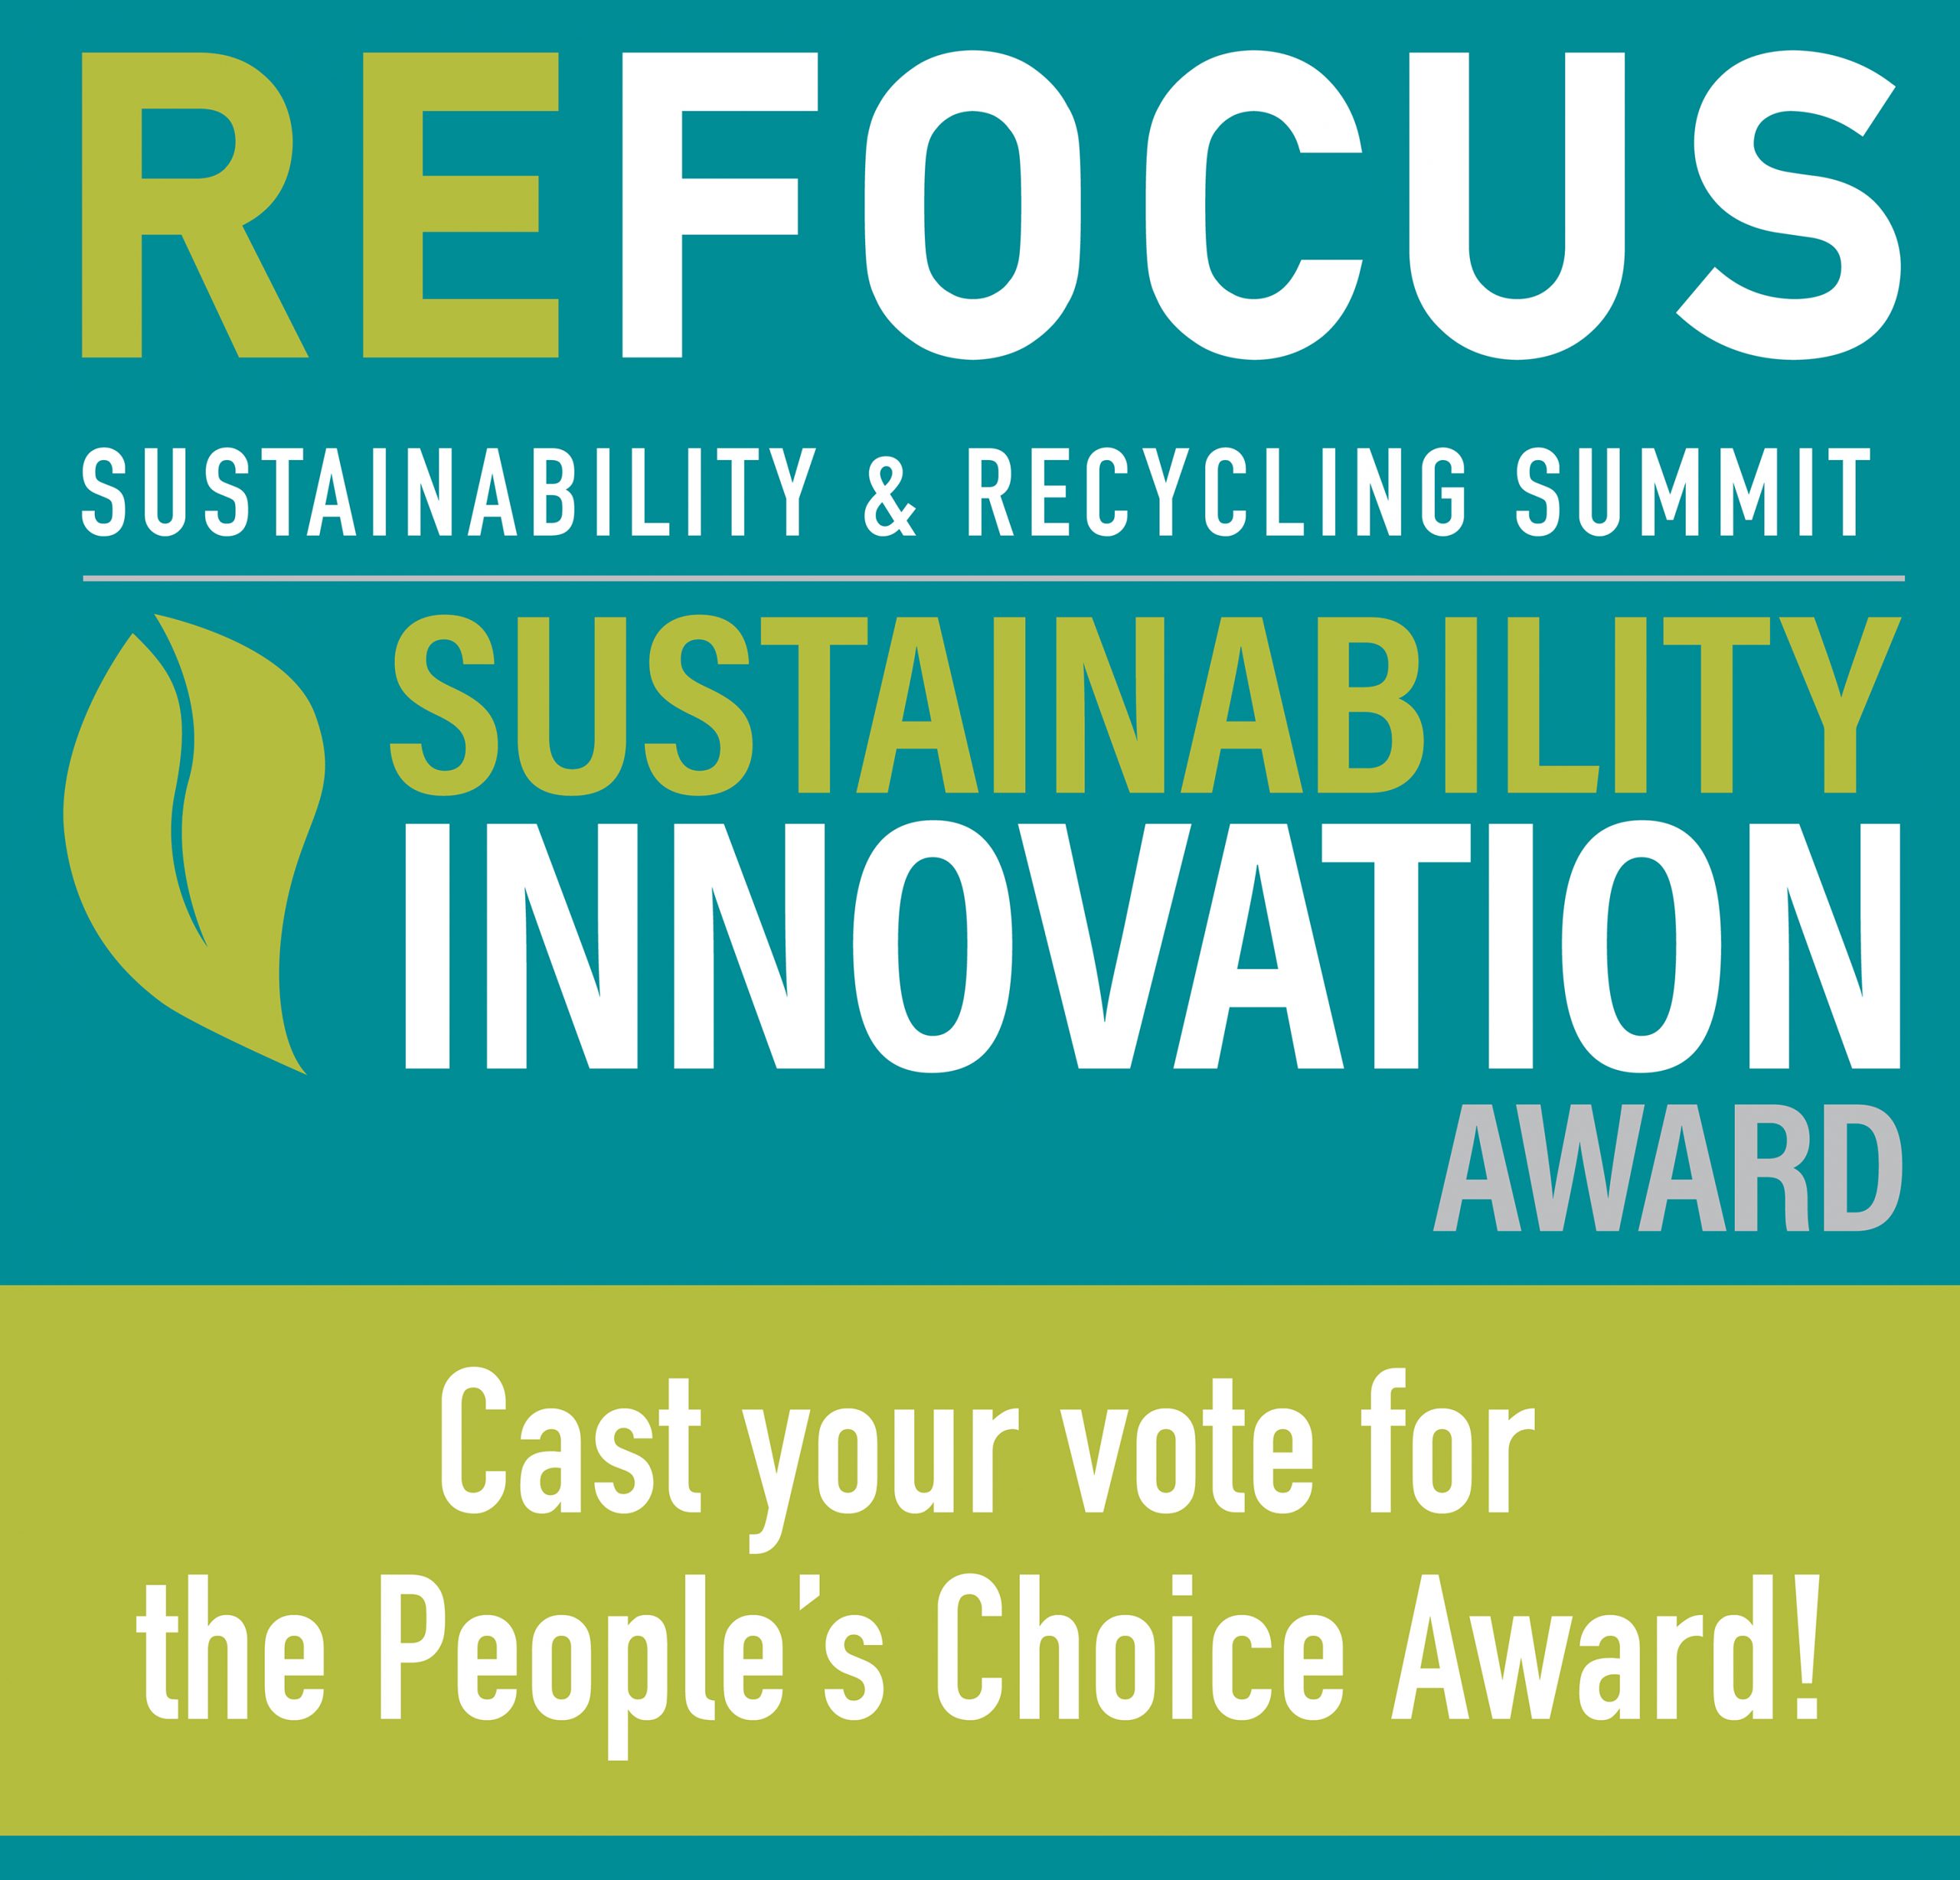 Refocus Innovation Award